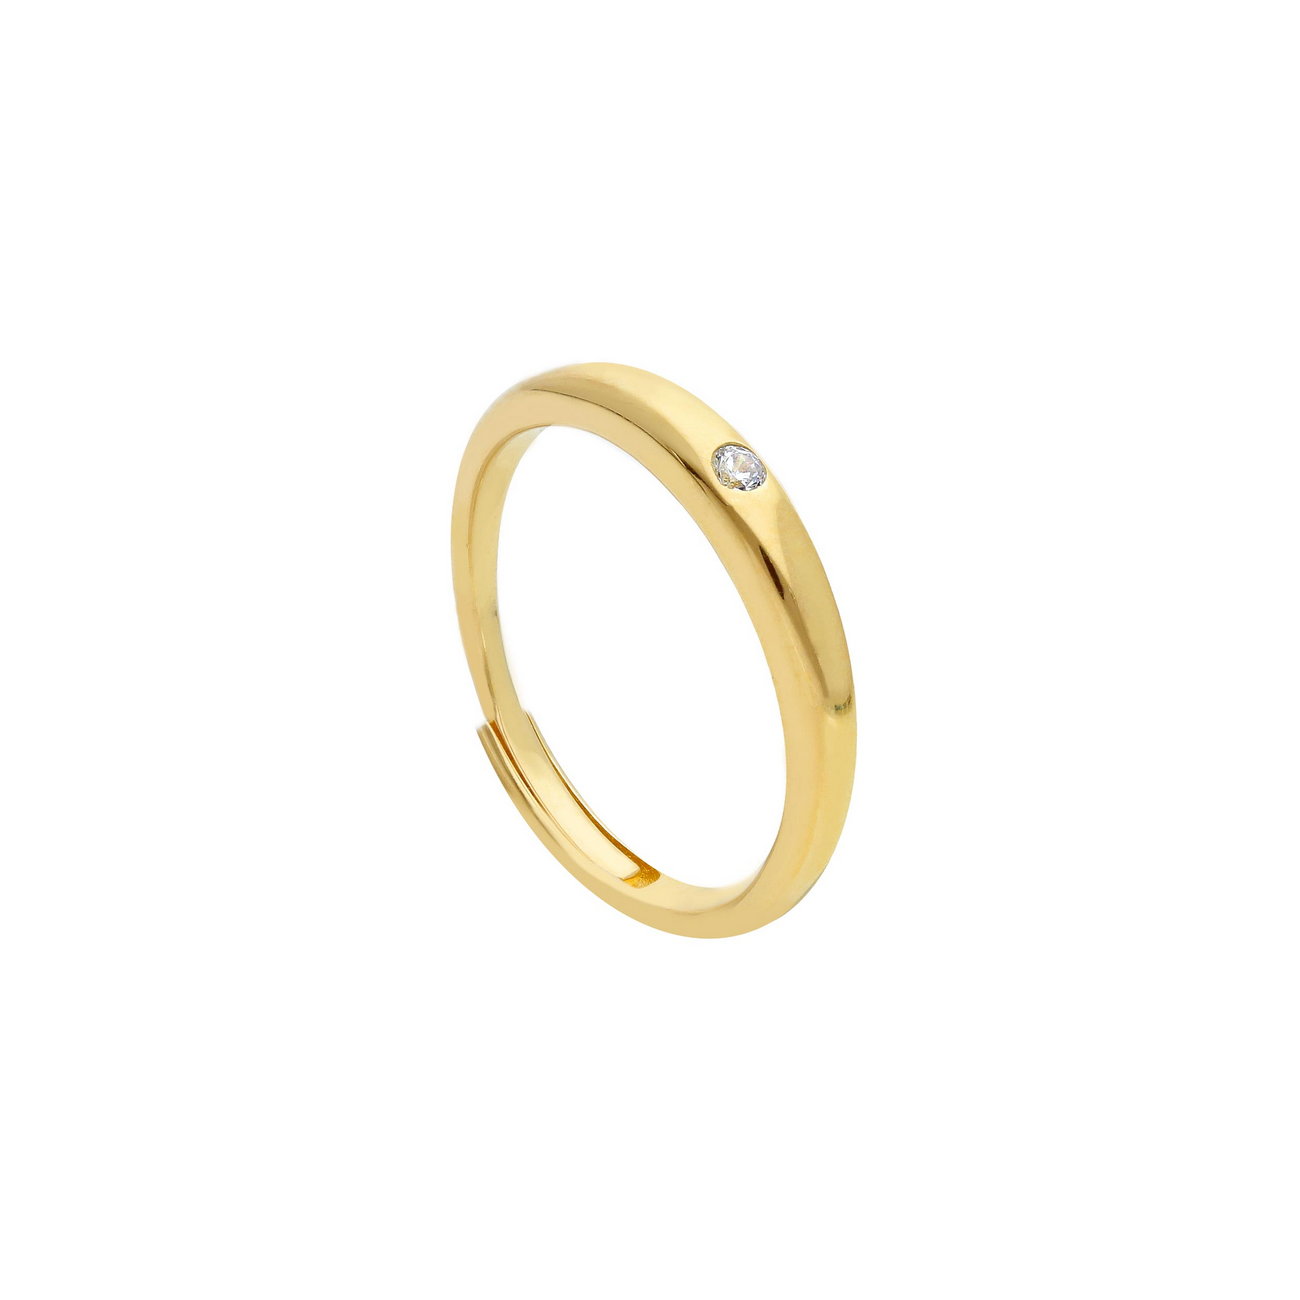 Ασημένιο κίτρινο επίχρυσο δαχτυλίδι με ντεγκραντέ σχέδιο